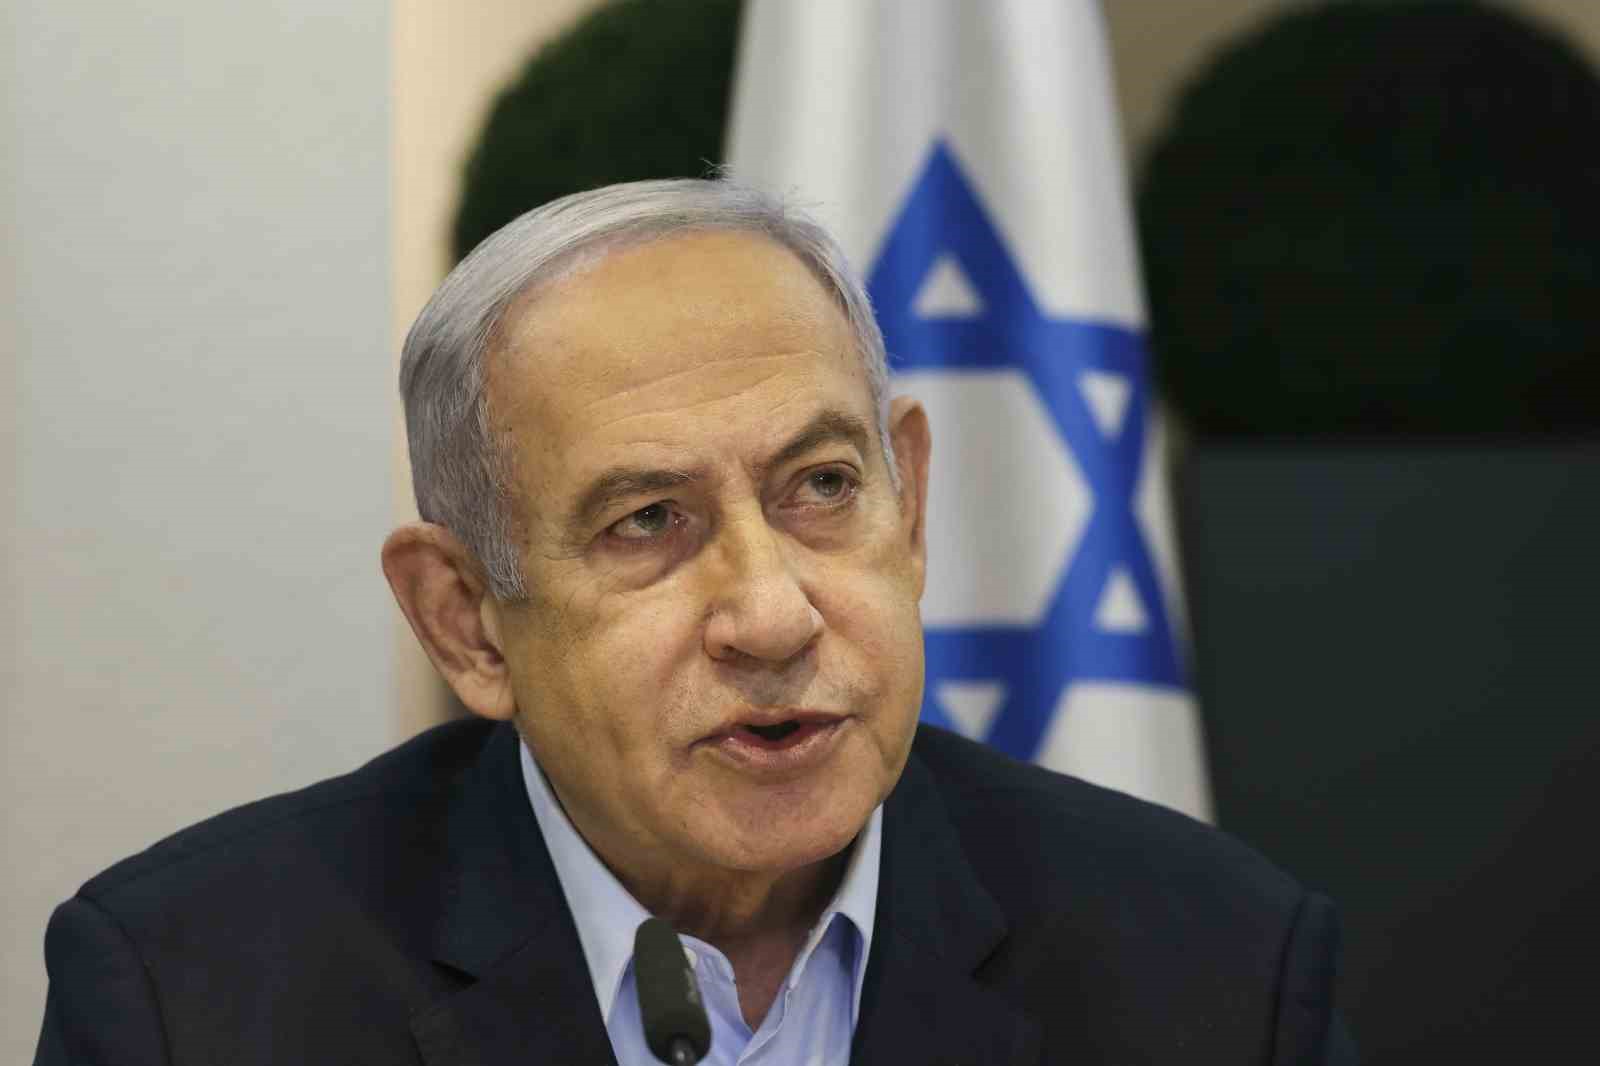 Netanyahu, İsrail’in Gazze’den çekilmesini içeren yeni esir takası anlaşmasını kabul etmeyecek